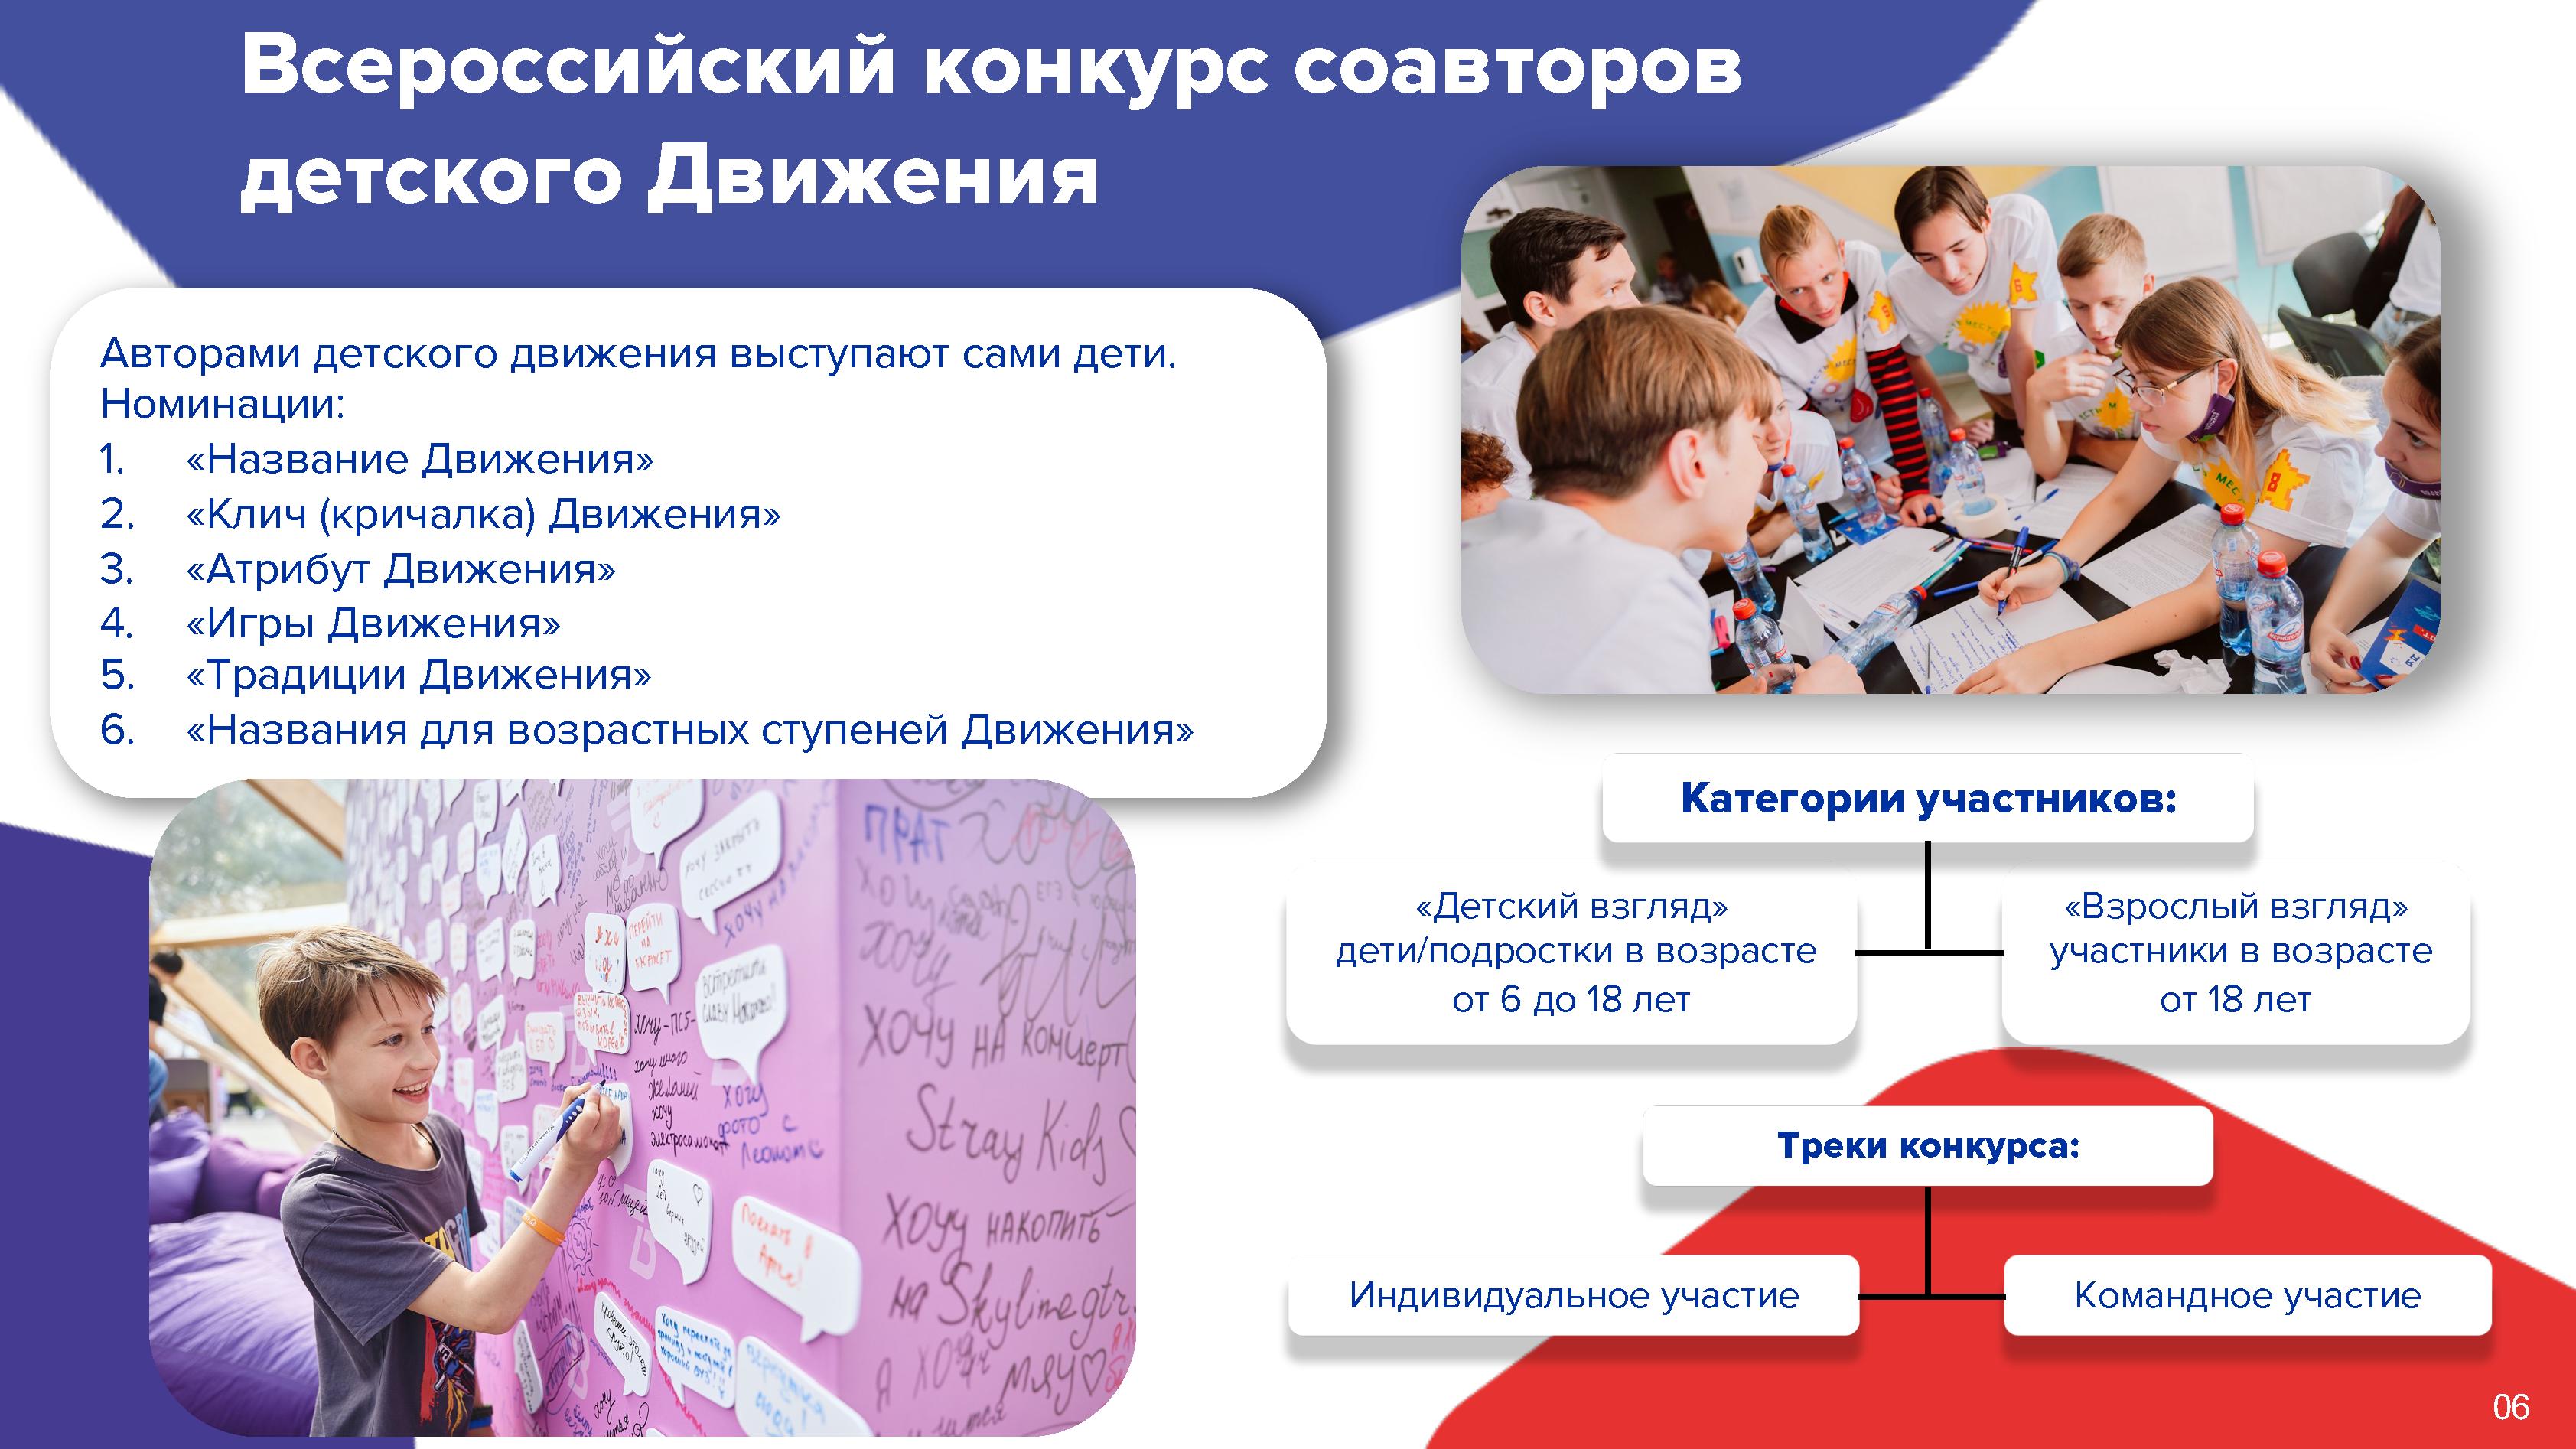 Российское движение молодежи регистрации. Детское движение Москвы.